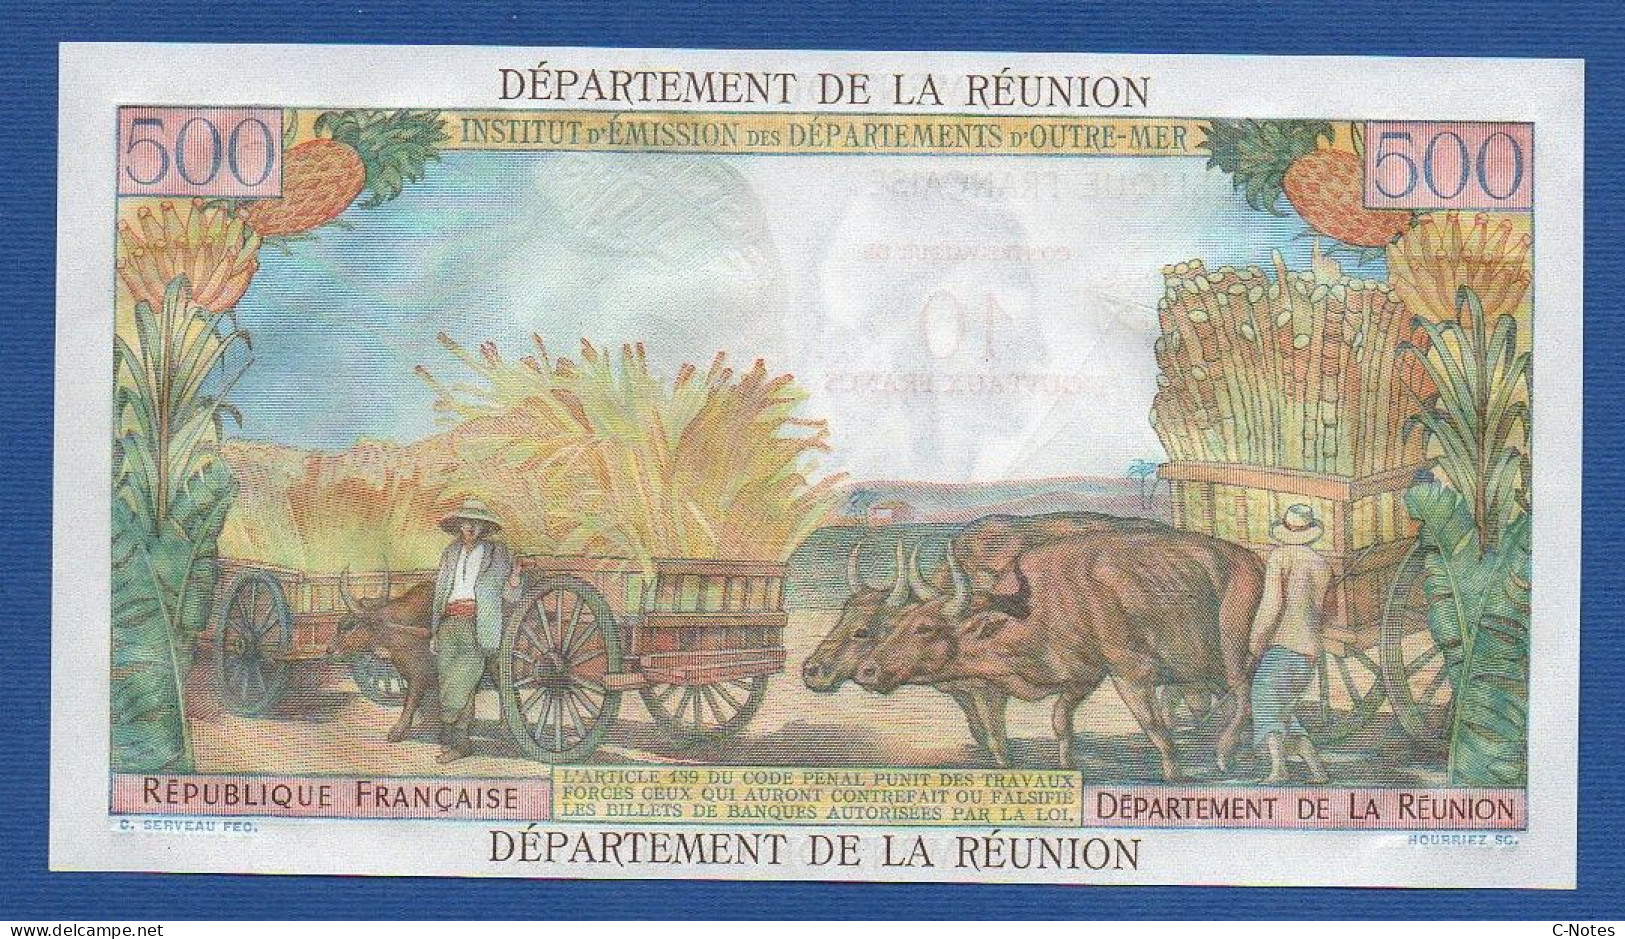 RÉUNION - P.54b – 10 Nouveaux Francs ND (1971) UNC, S/n W.1 82730 - Reunion